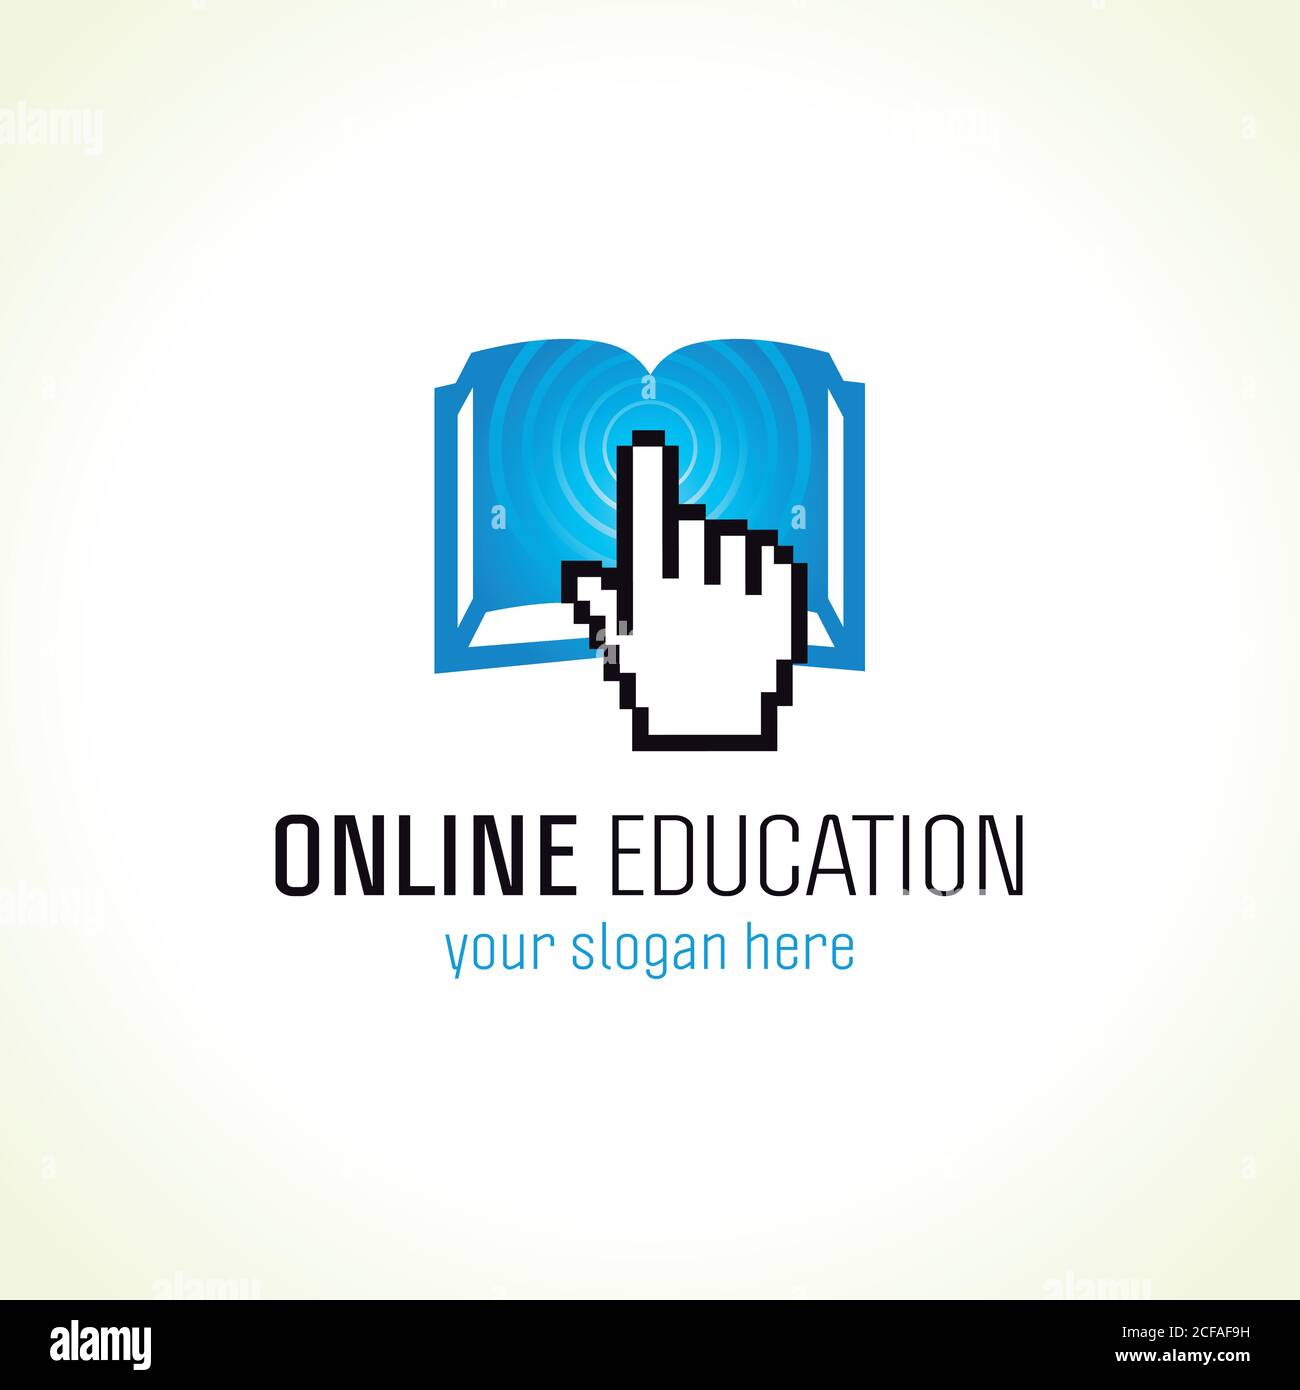 Online-Bildung Vektor-Logo mit Pixel-Hand, offenes Buch und Radiowellen. Schild für die Internetschule. E book- oder E reader-Computer-Einstellungen oder Smartphone-App Stock Vektor